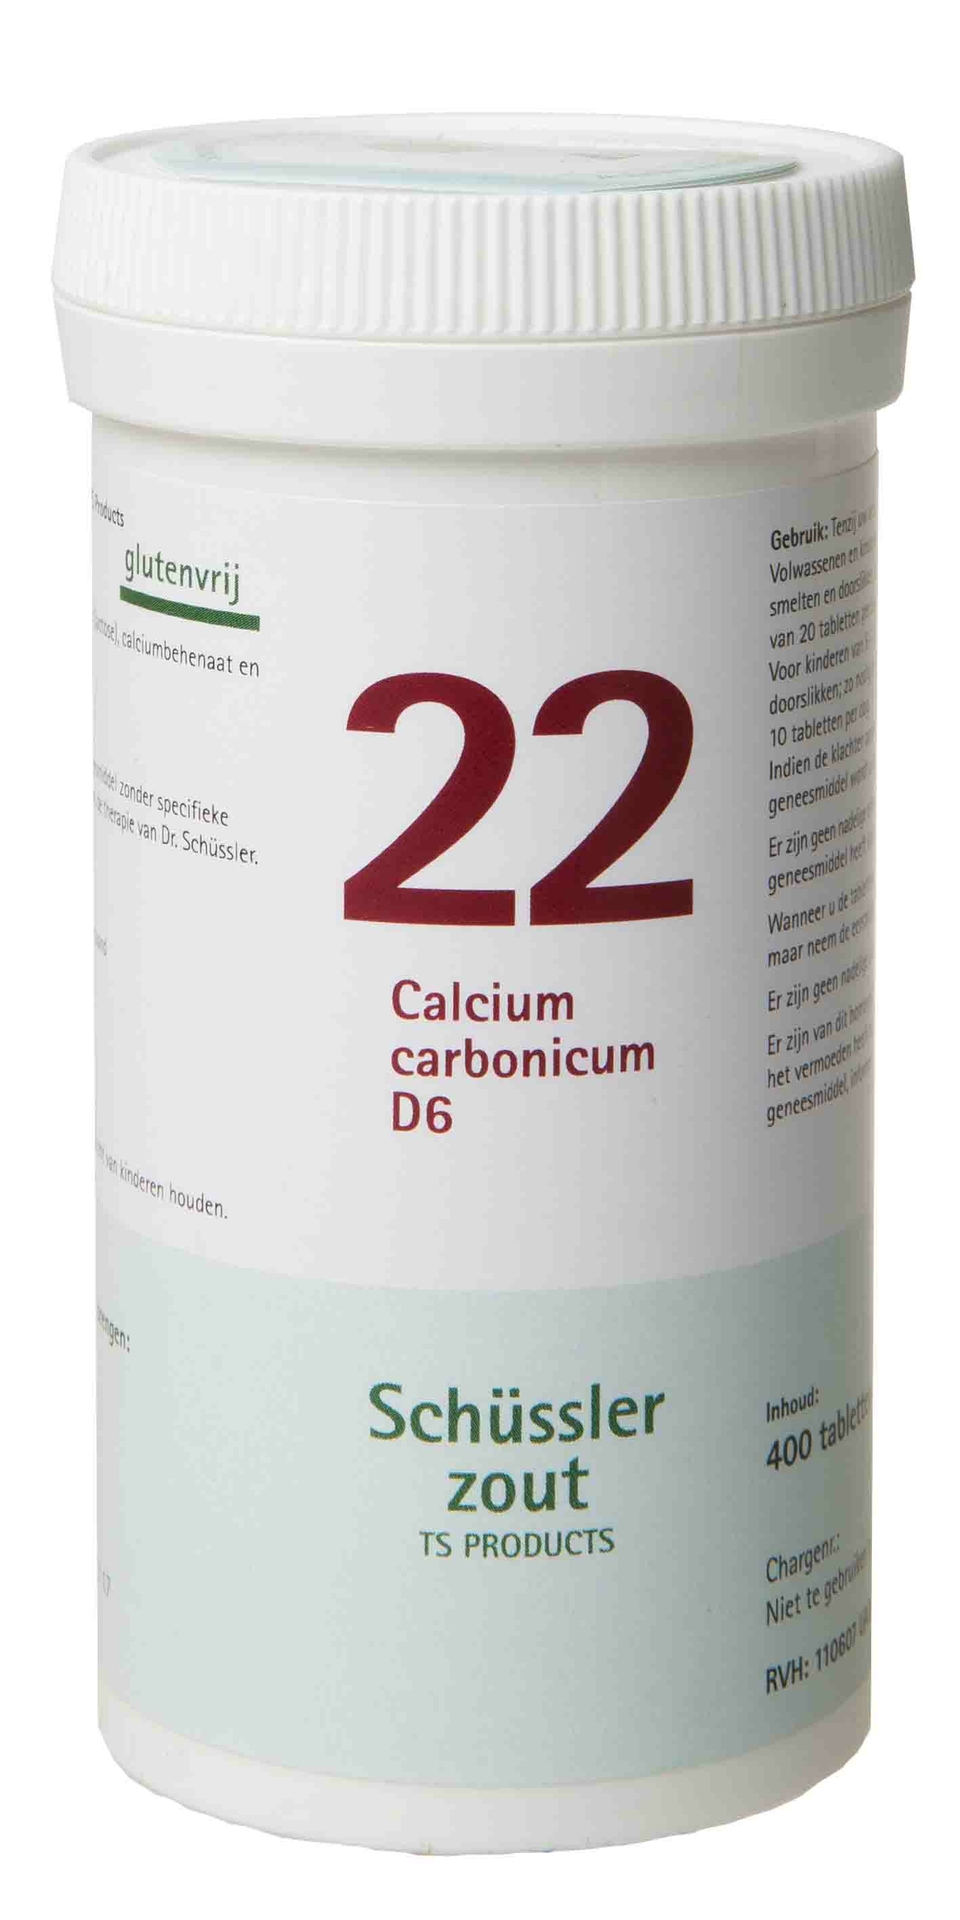 Calcium carbonicum 